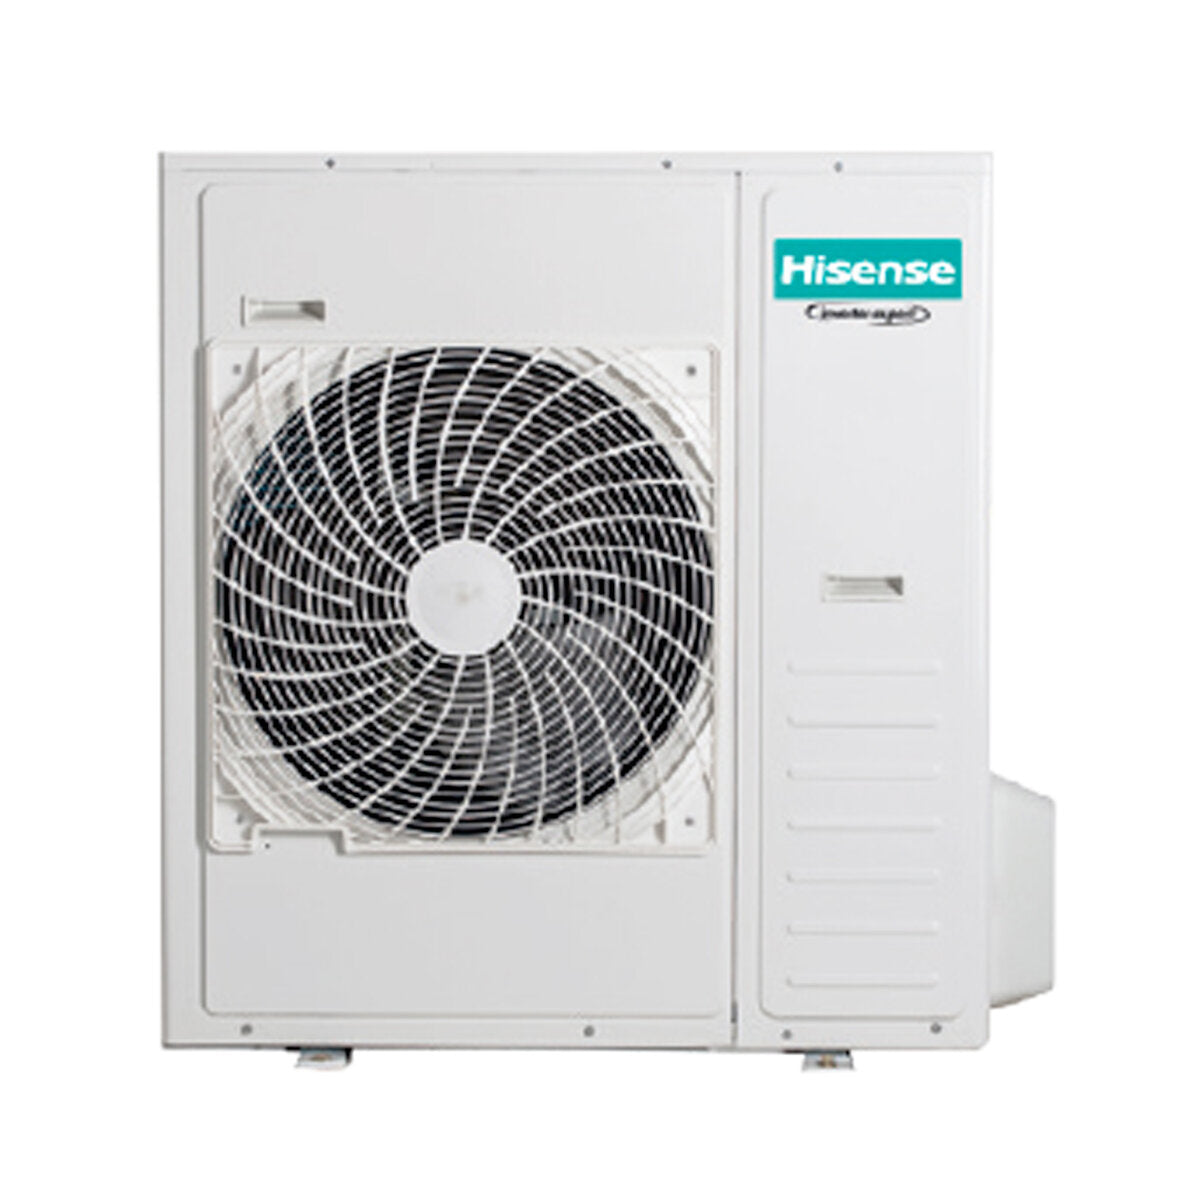 Hisense Hi-Comfort quadri split air conditioner 7000 + 7000 + 9000 + 24000 BTU wifi inverter outdoor unit 12.5 kW